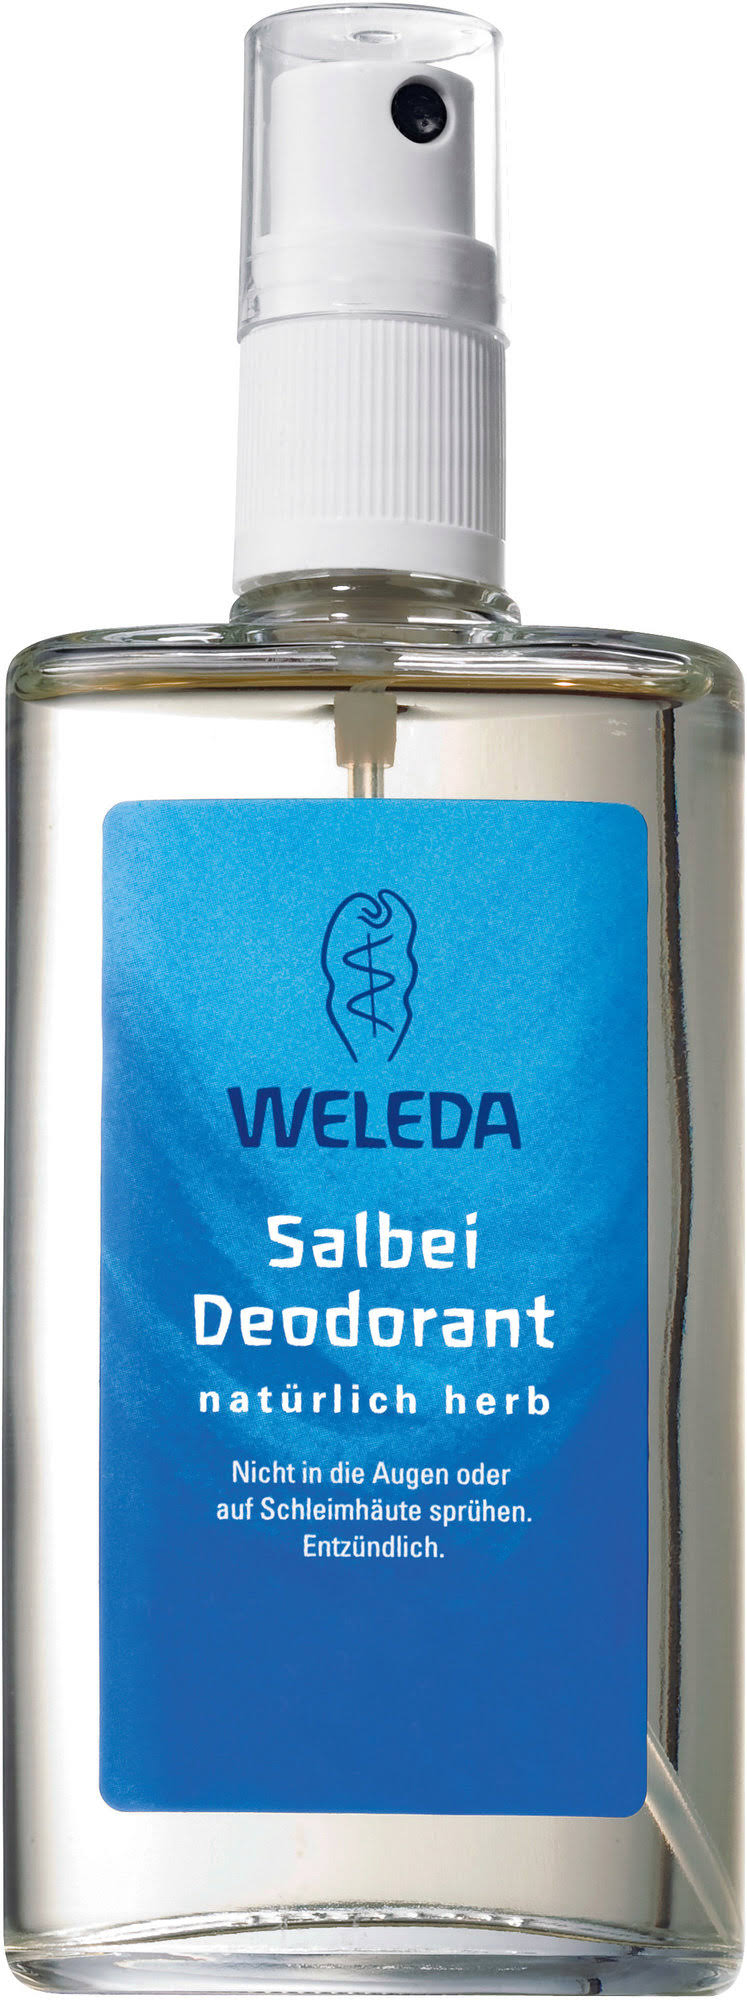 Weleda Deodorant, Sage - 3.4 fl oz